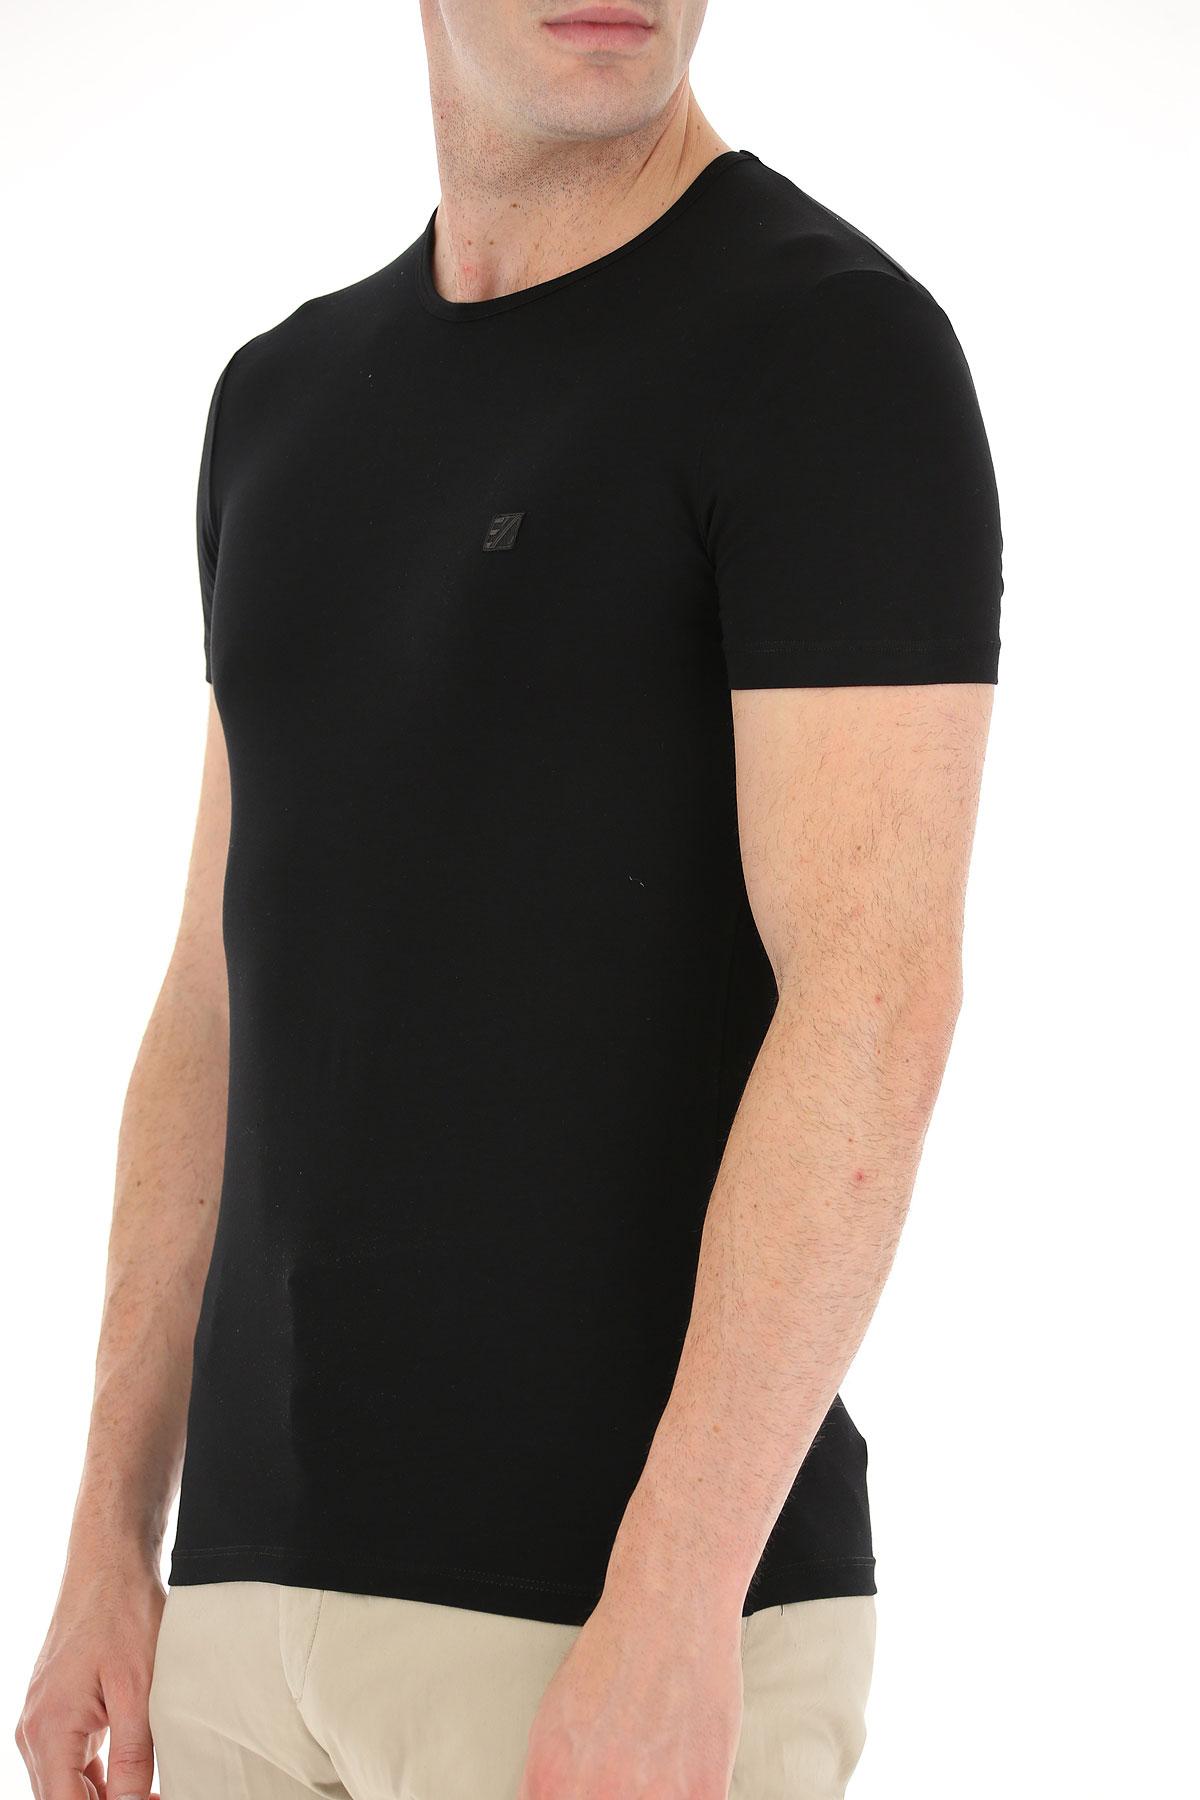 Ermenegildo Zegna Synthetic T-shirt For Men in Black for Men - Lyst